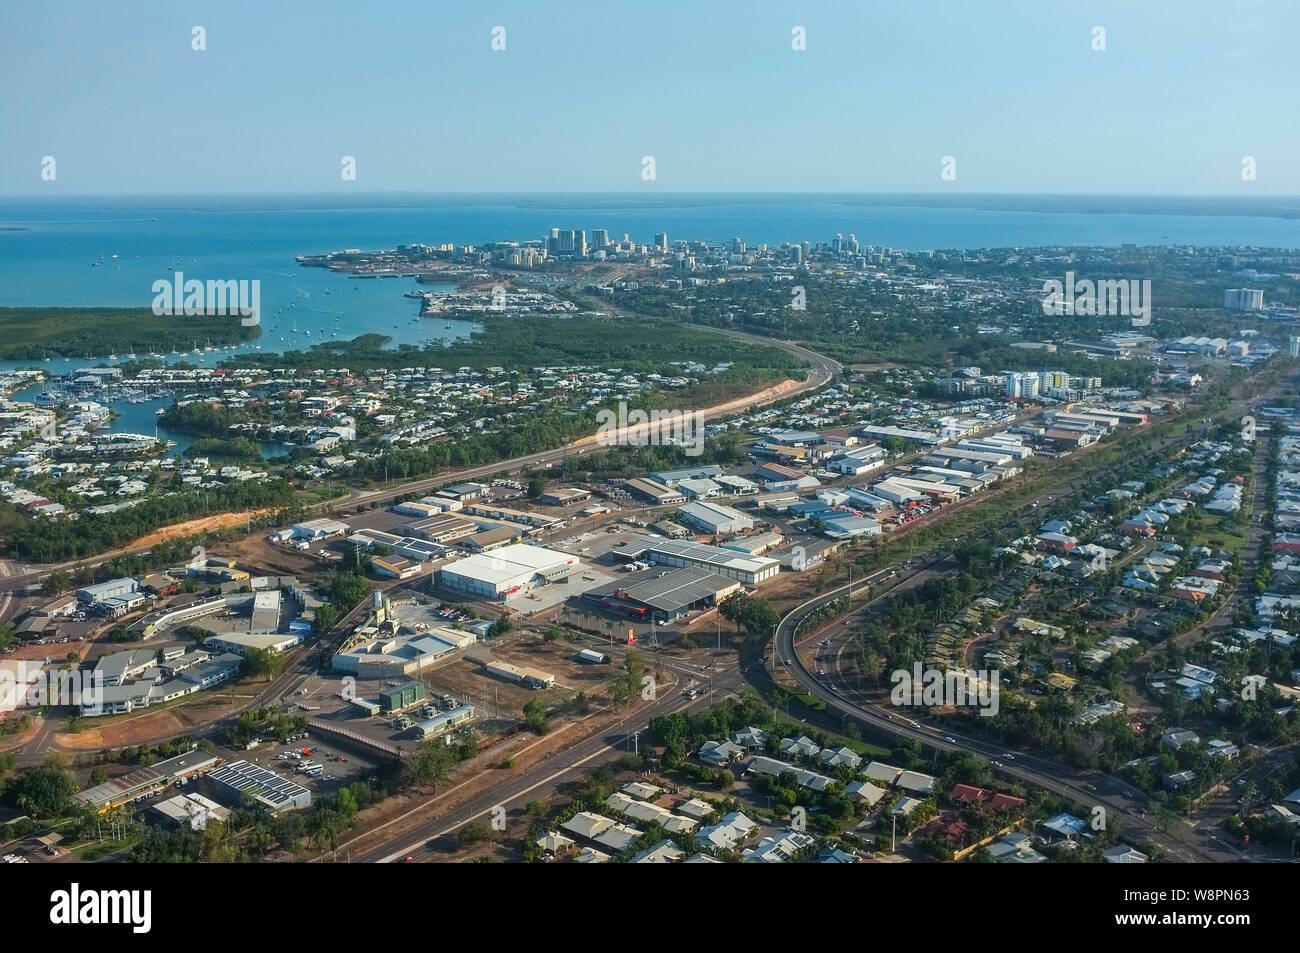 La ville de Darwin, capitale du Territoire du Nord de l'Australie, vue de l'air. Banque D'Images